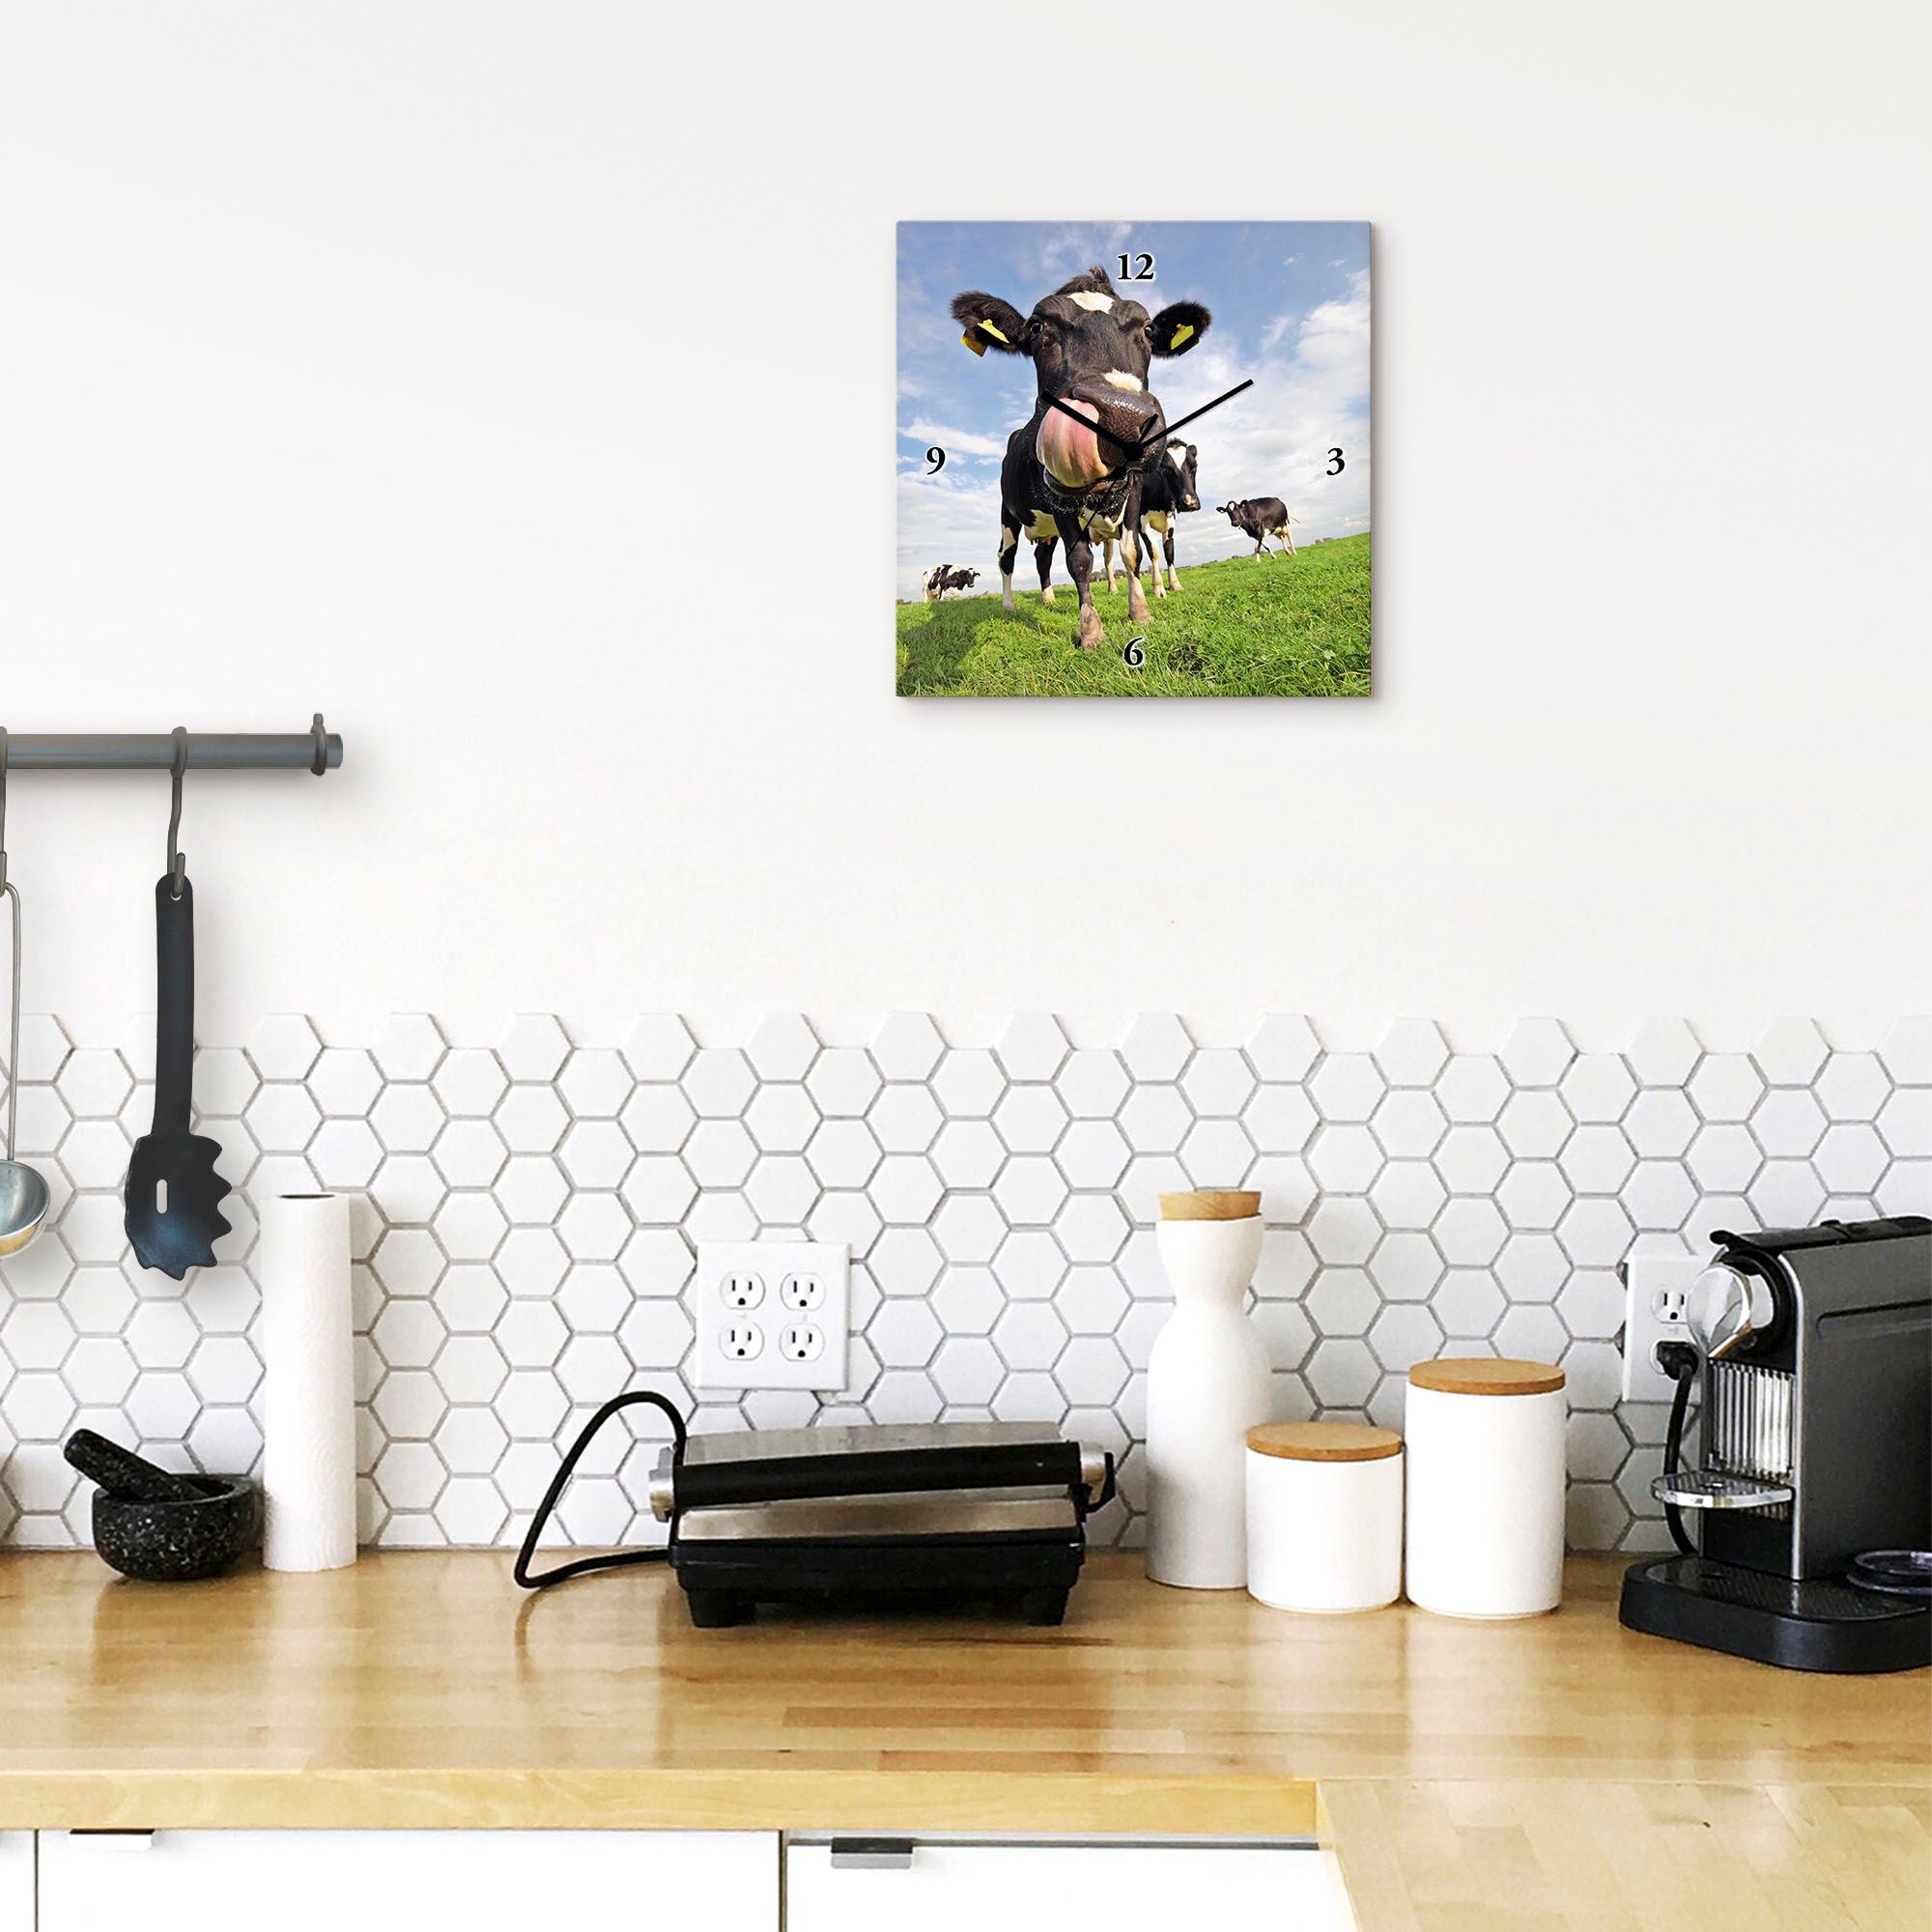 Artland Wanduhr »Holstein-Kuh mit gewaltiger Zunge«, wahlweise mit Quarz- oder Funkuhrwerk, lautlos ohne Tickgeräusche